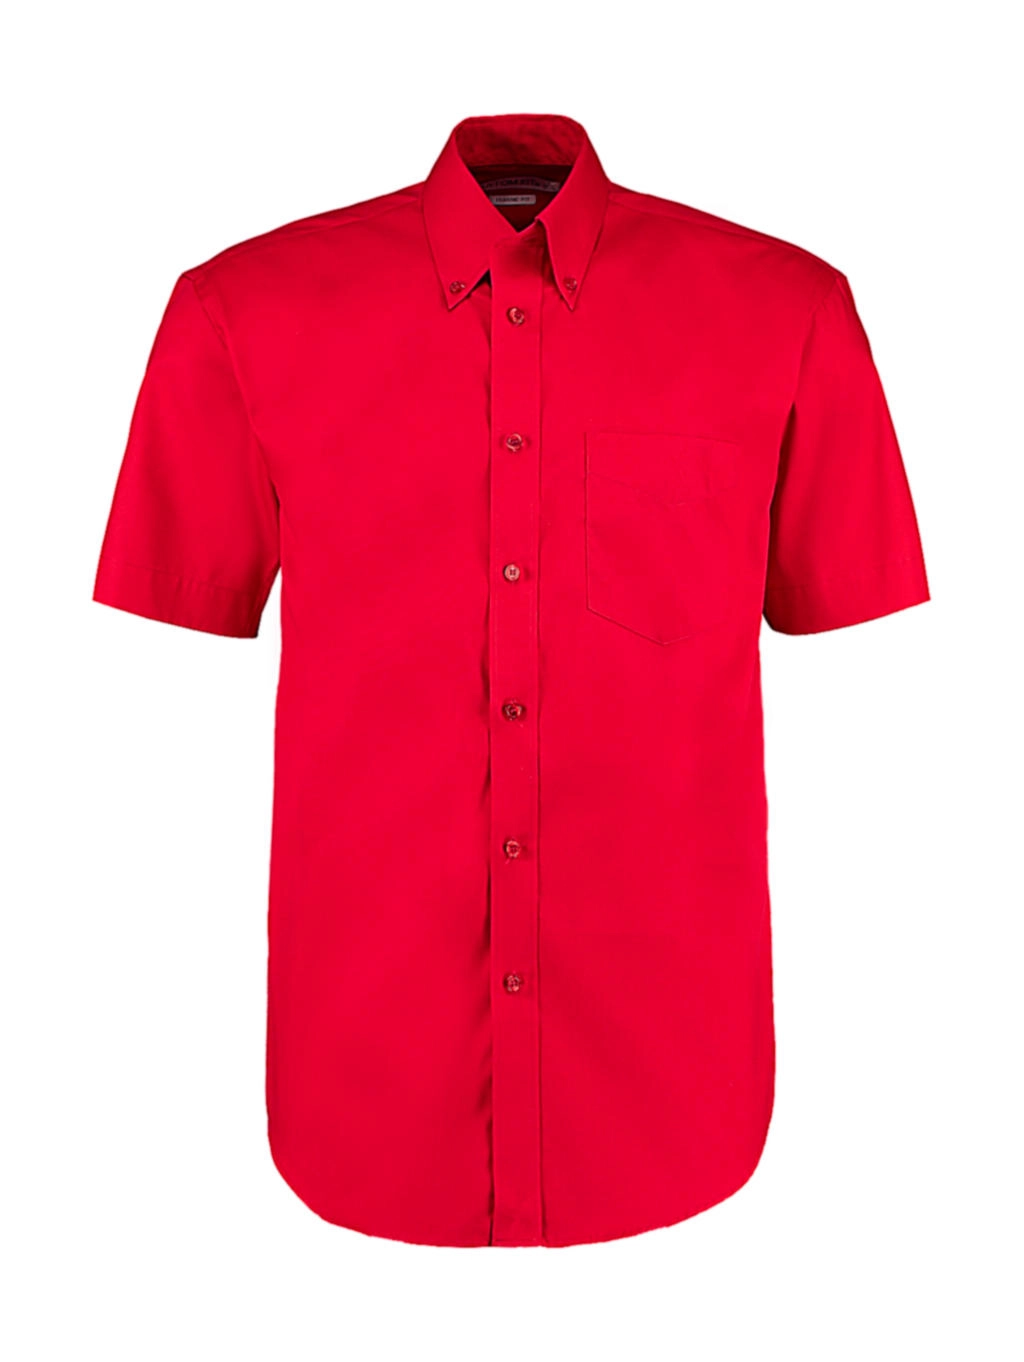 Classic Fit Premium Oxford Shirt SSL zum Besticken und Bedrucken in der Farbe Red mit Ihren Logo, Schriftzug oder Motiv.